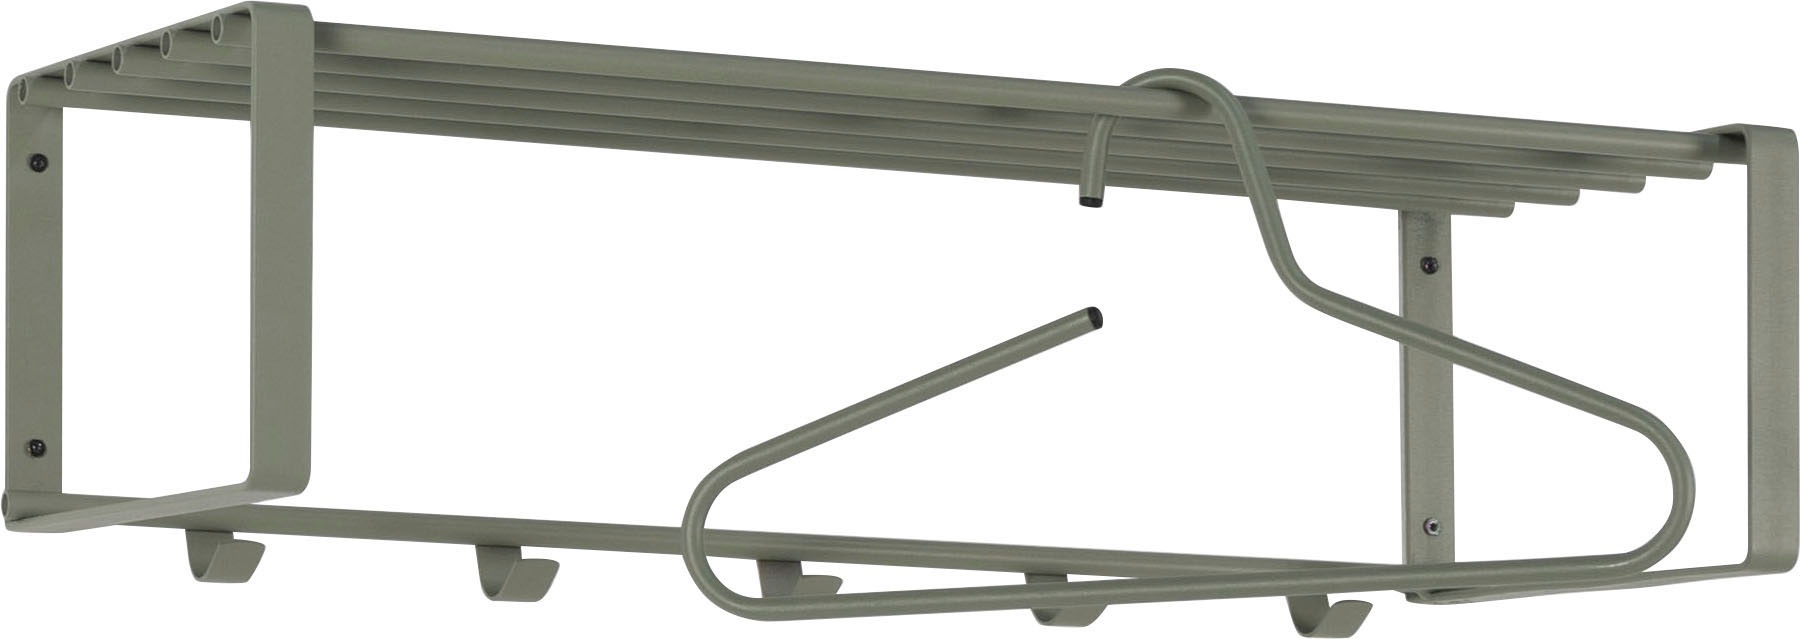 Spinder Design Garderobenhalter »REX«, Metall, Breite 70 cm